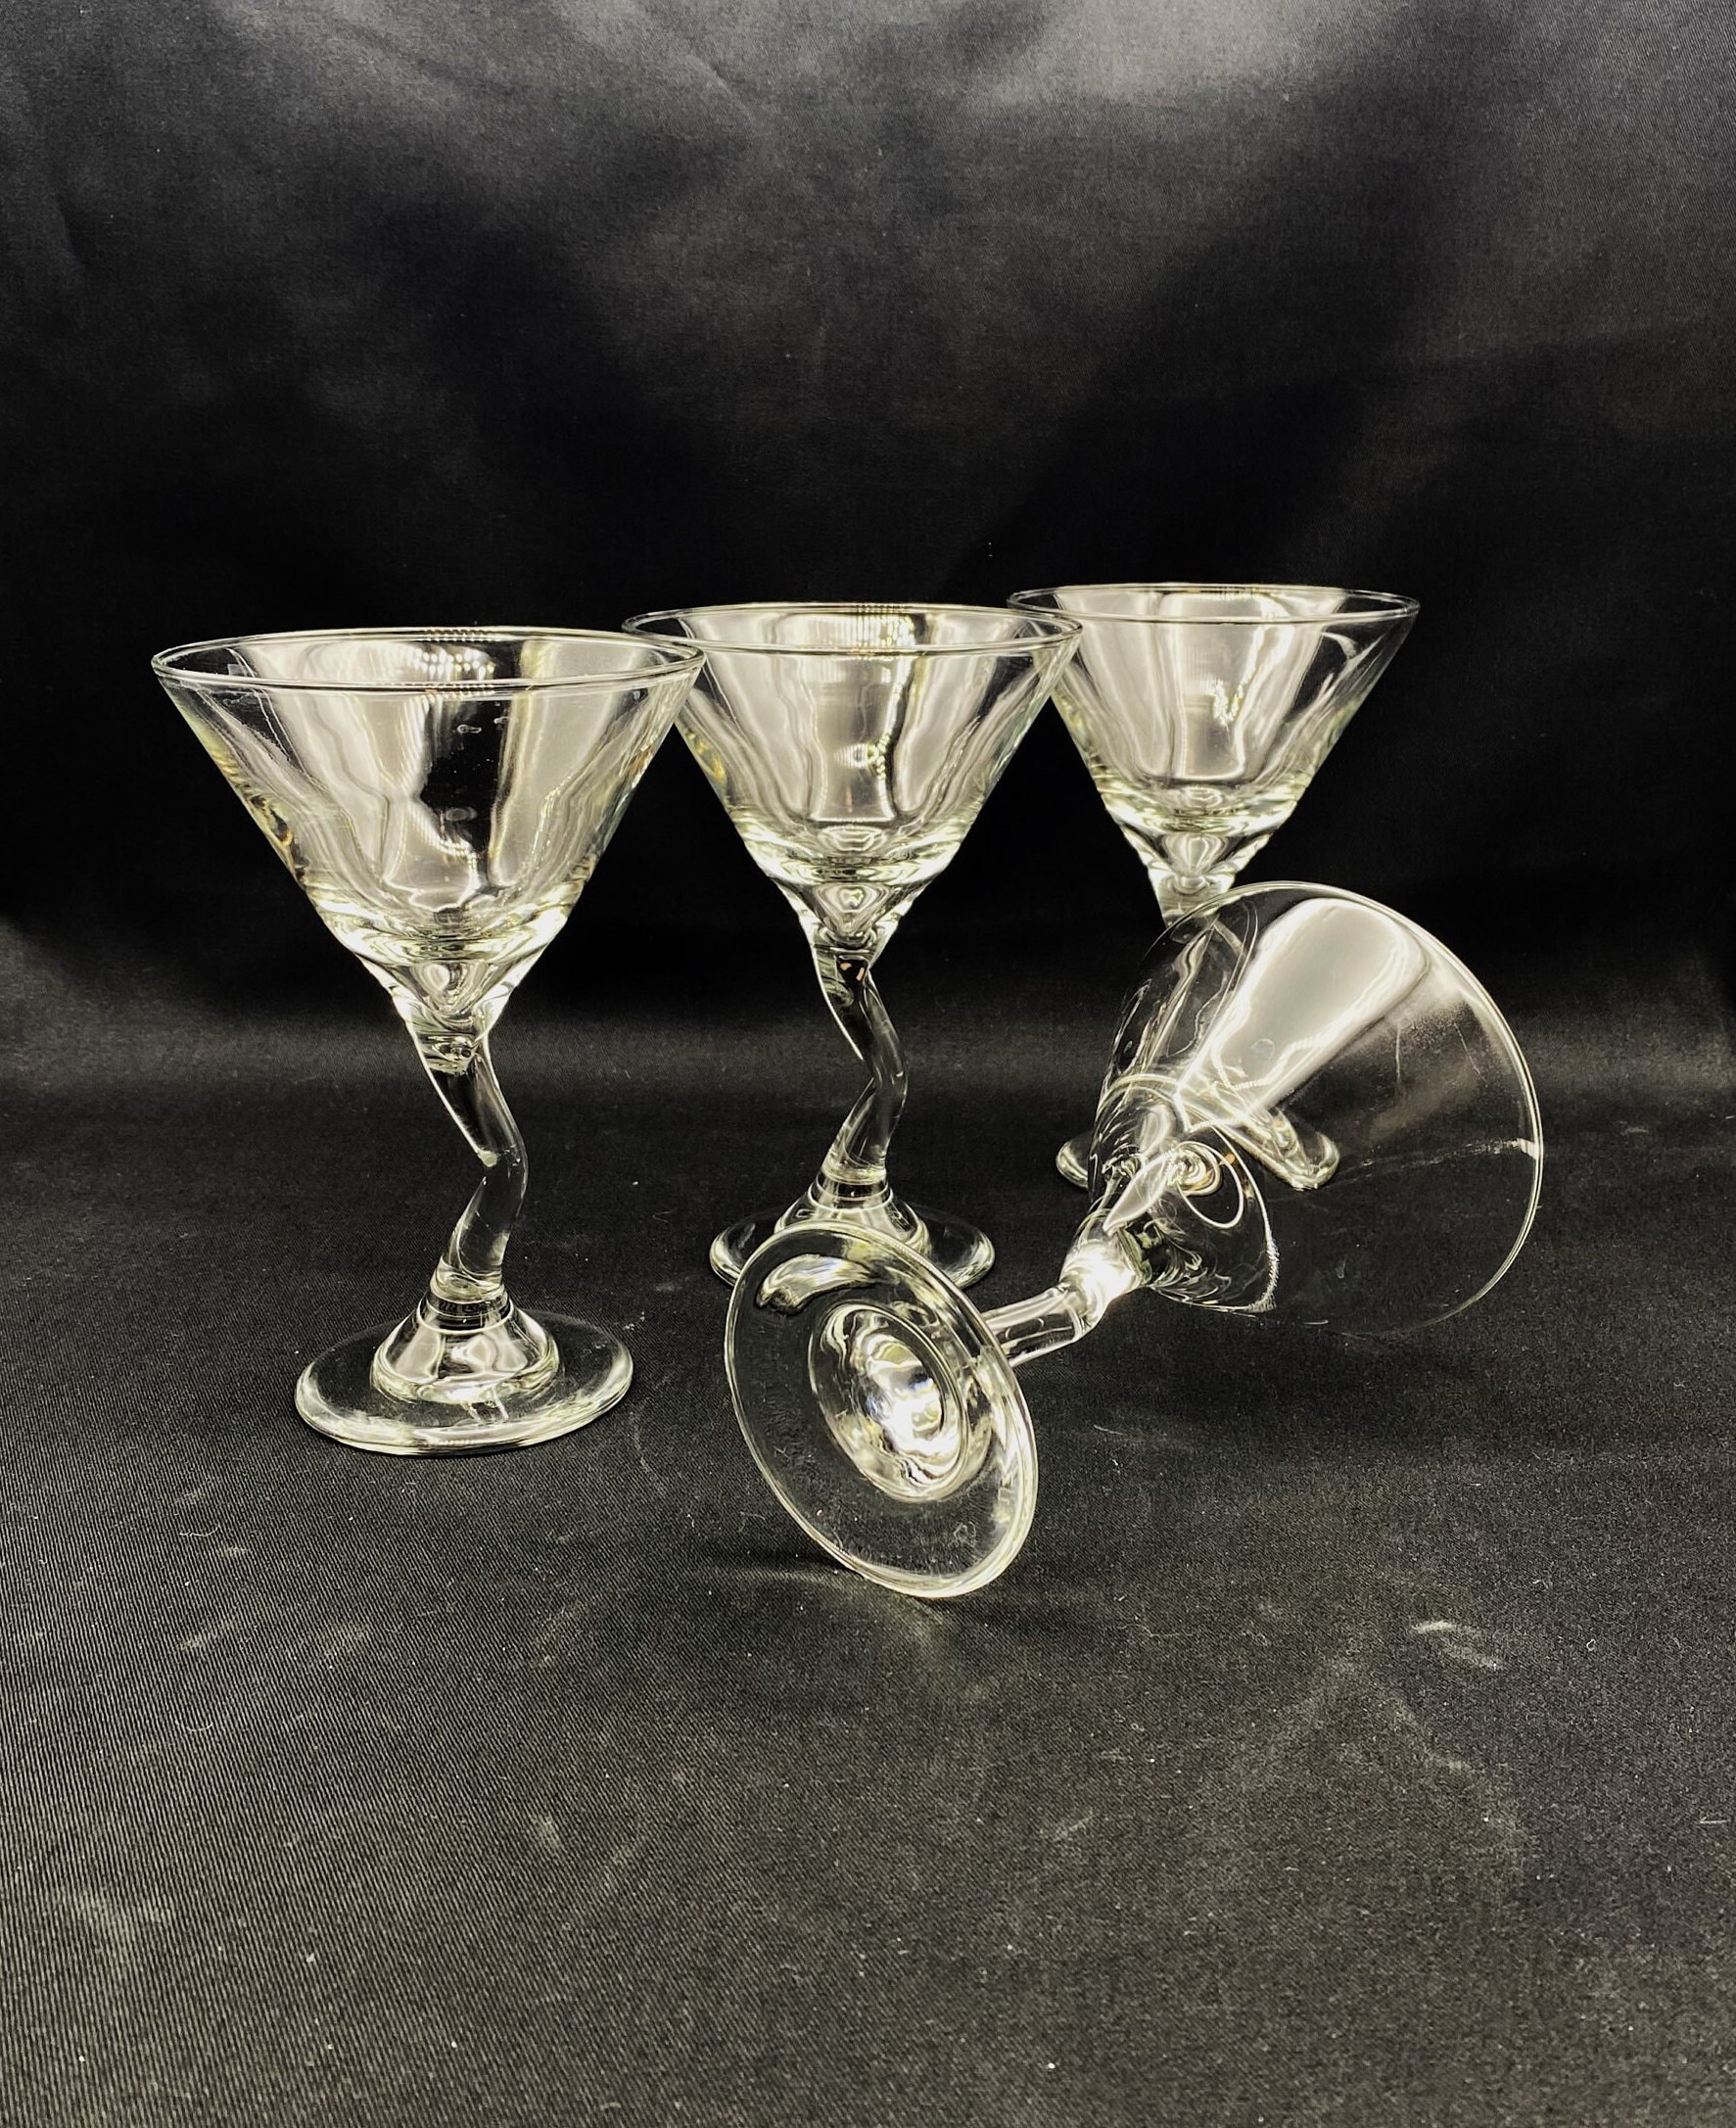 Libbey Glassware 601404 Retro Martini Glass, 6-1/2 oz. (Pack of 12)